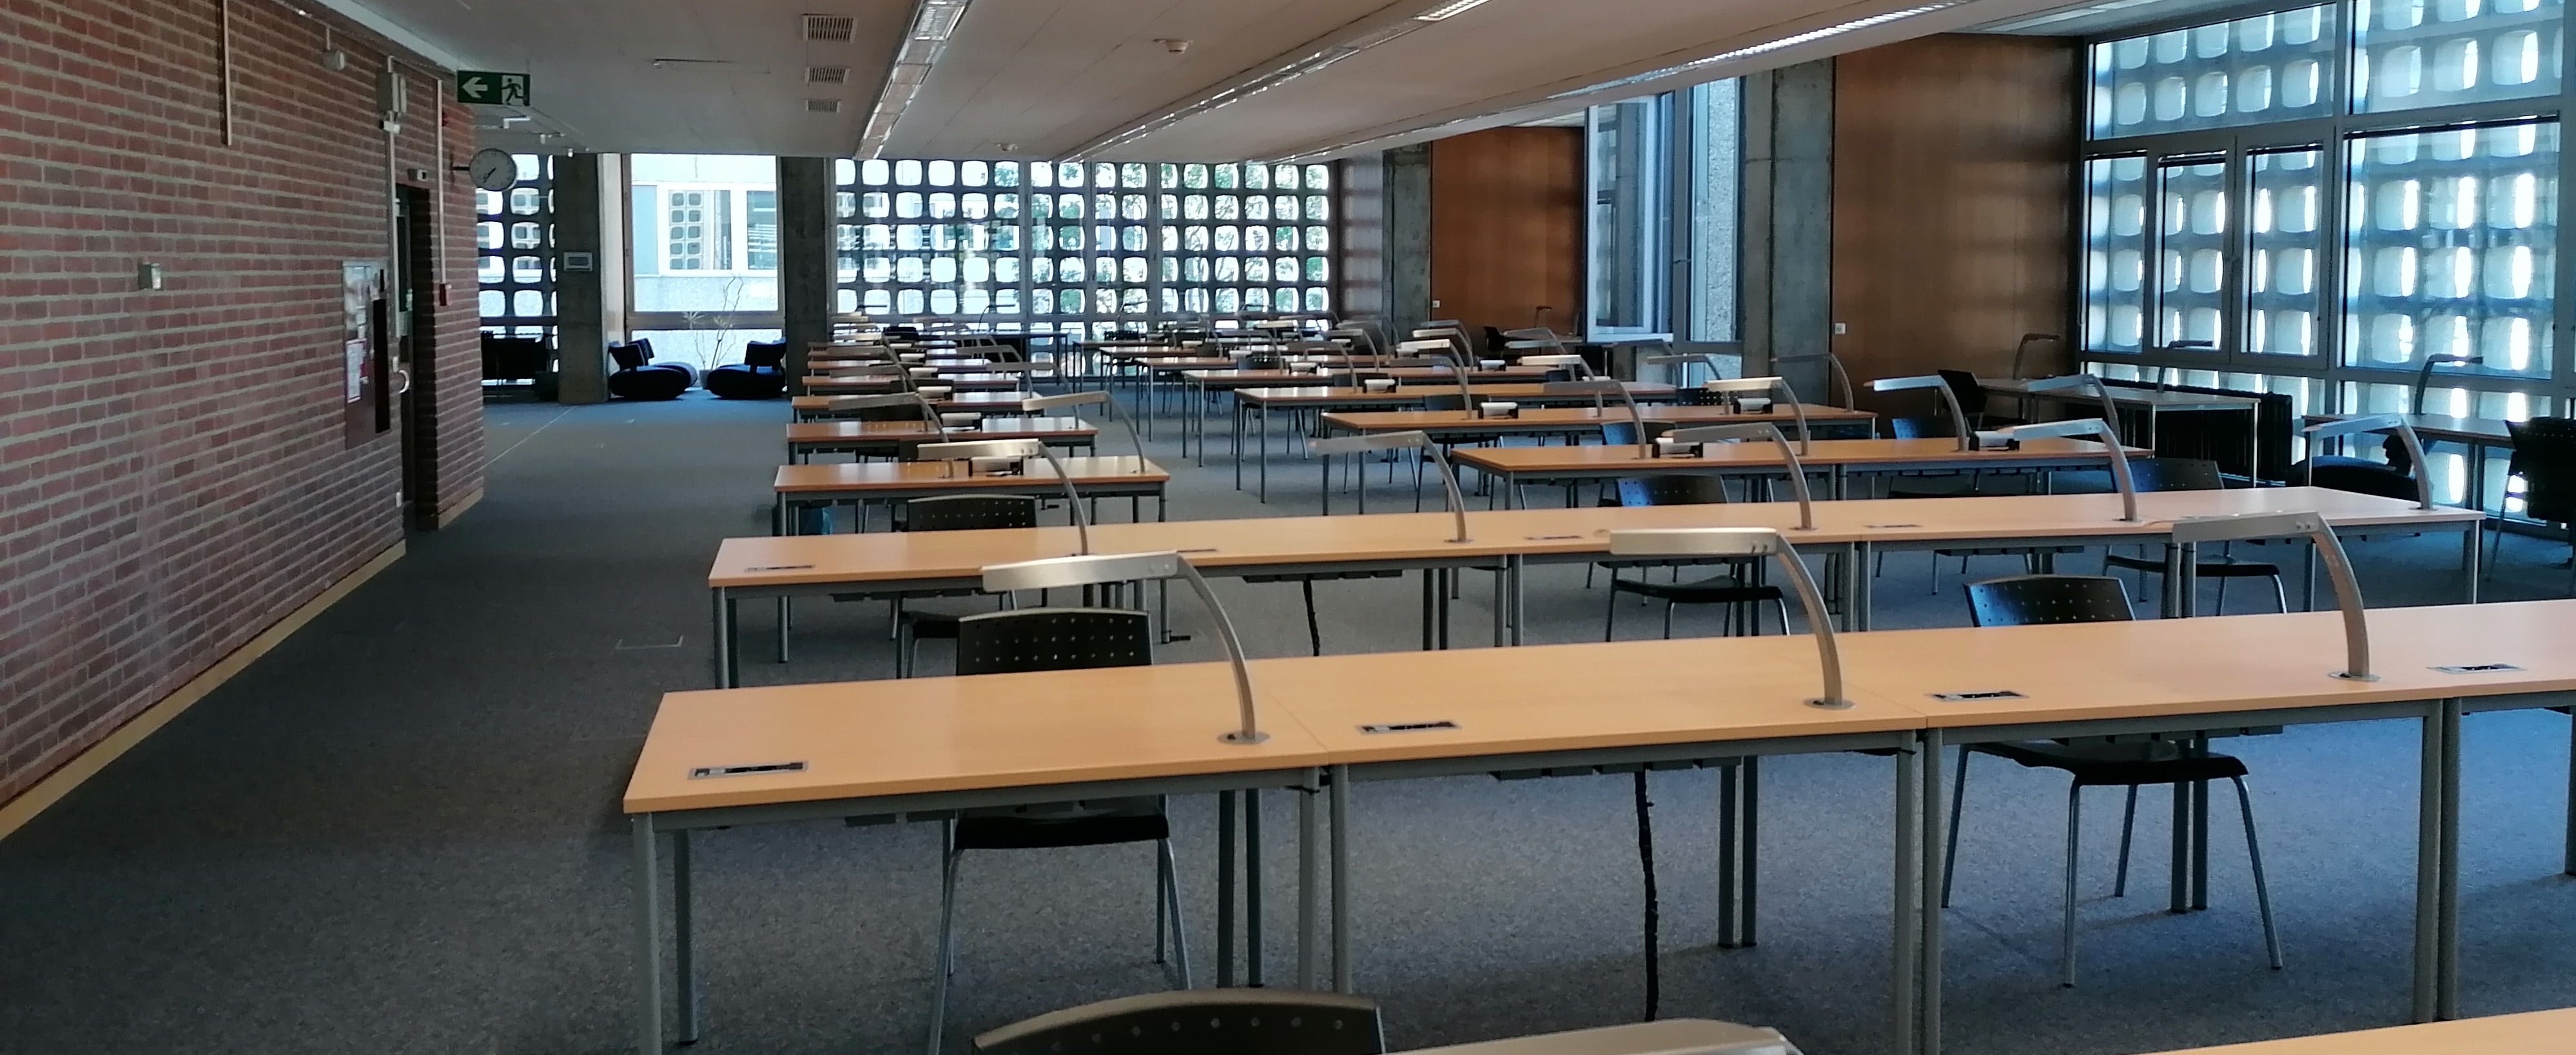 Tische ausgestattet mit Steckdosen, Leselampen und WLAN, Arbeitsplätze zum konzentrierten Lernen im oberen Lesesaal der Bibliothek